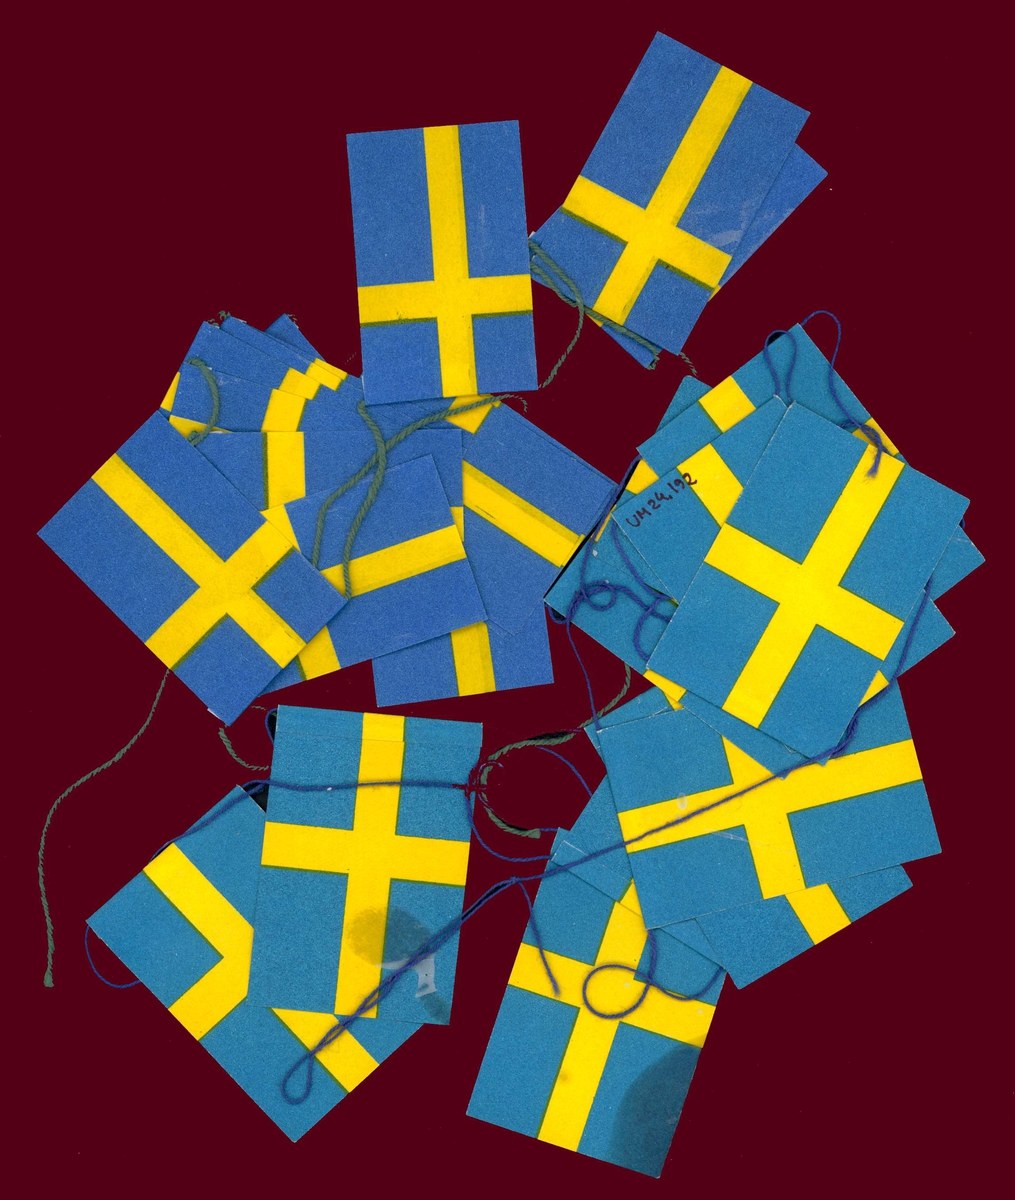 Julgransflaggor av papper, utforamde efter svenska flaggan.